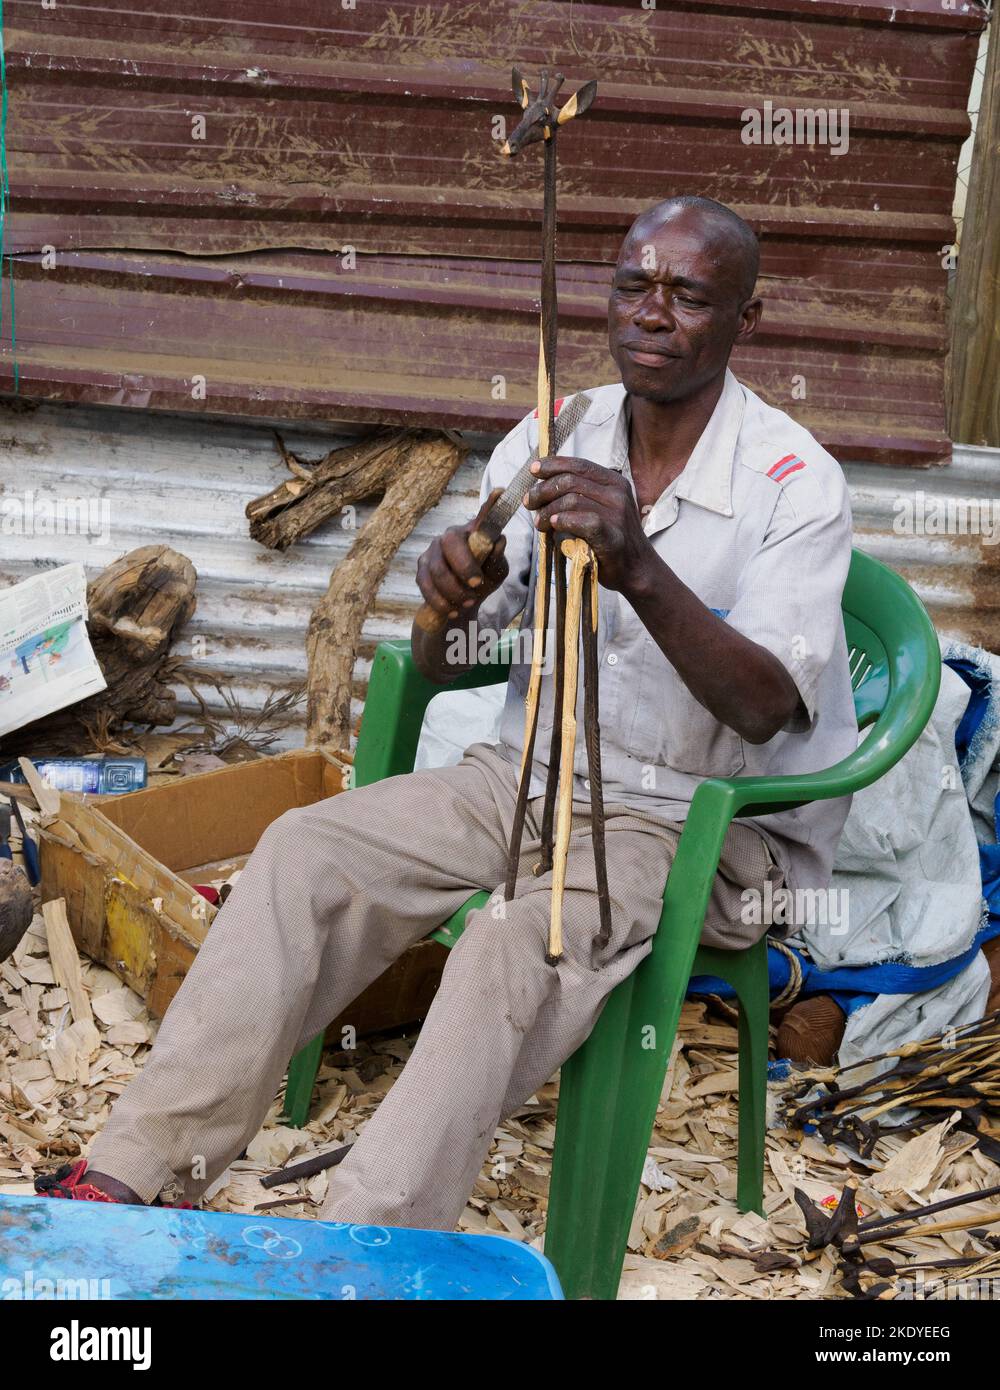 Artisan produisant des sculptures en bois pour le marché touristique dans un centre artisanal de Nairobi au Kenya Banque D'Images